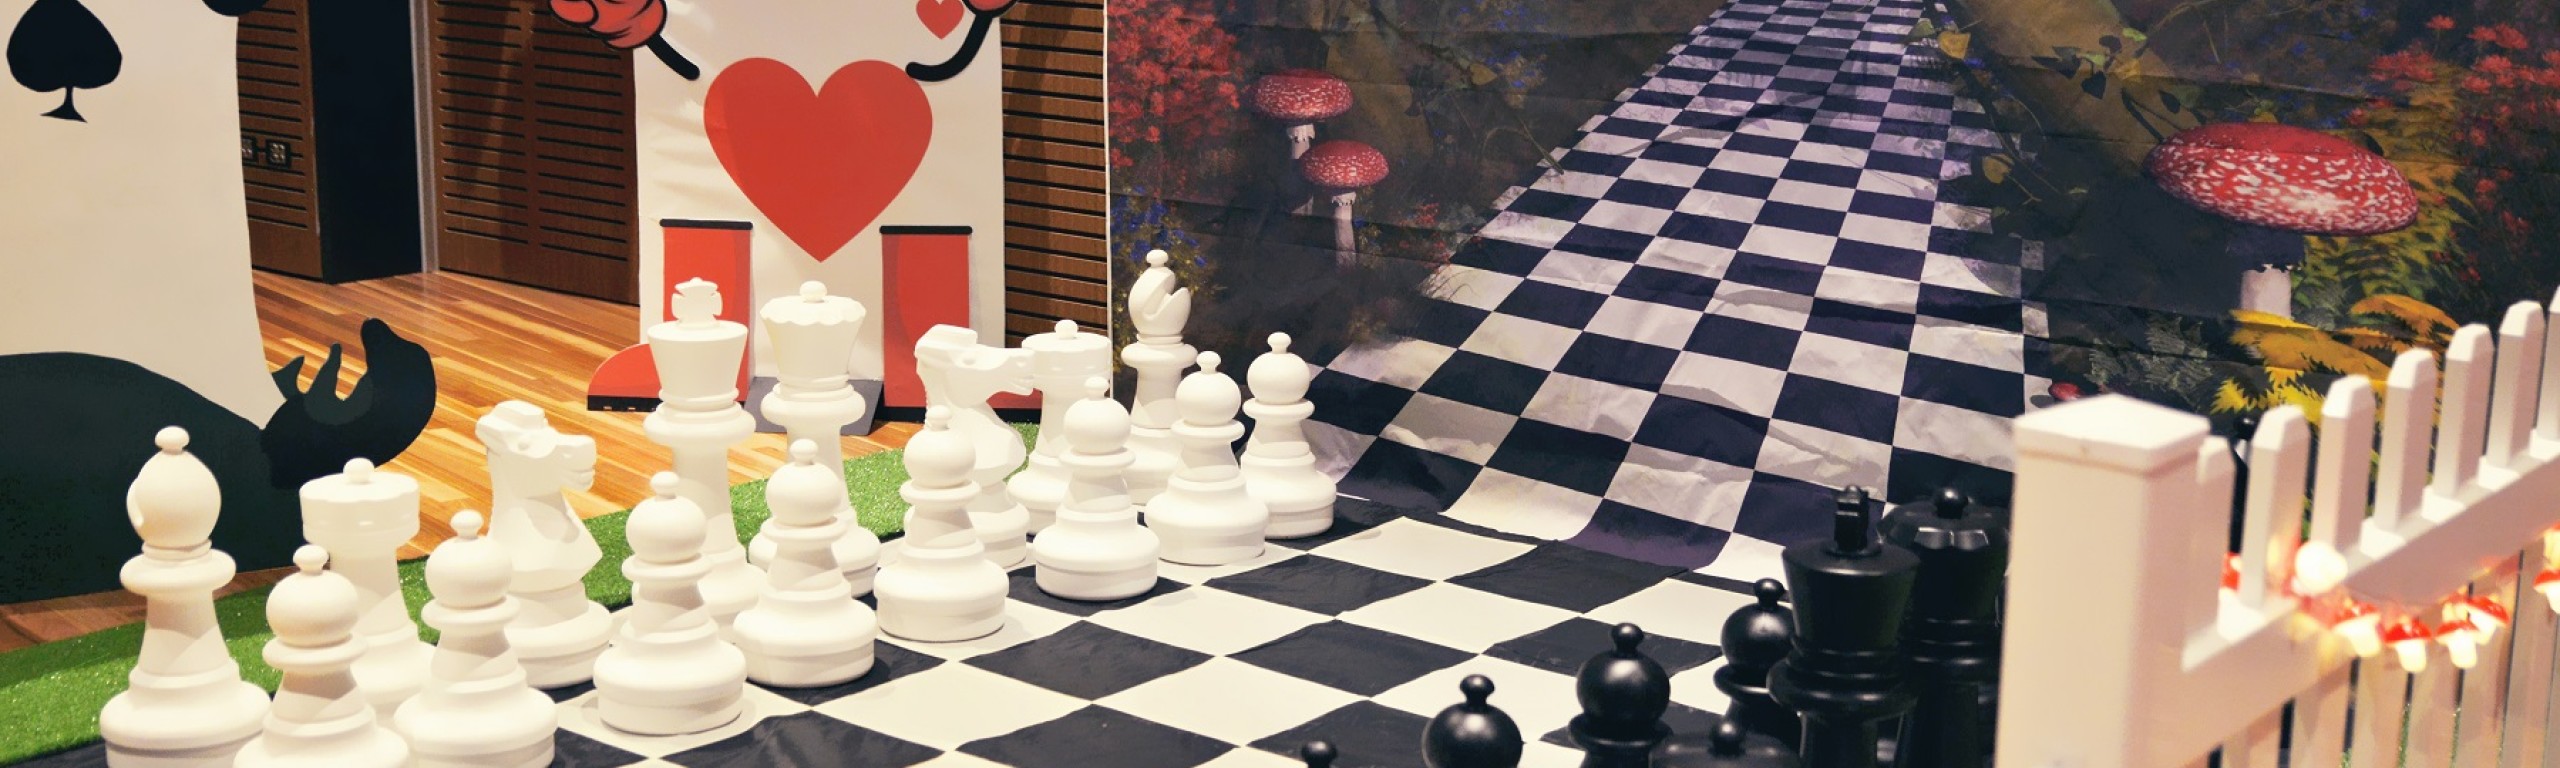 alice chess board